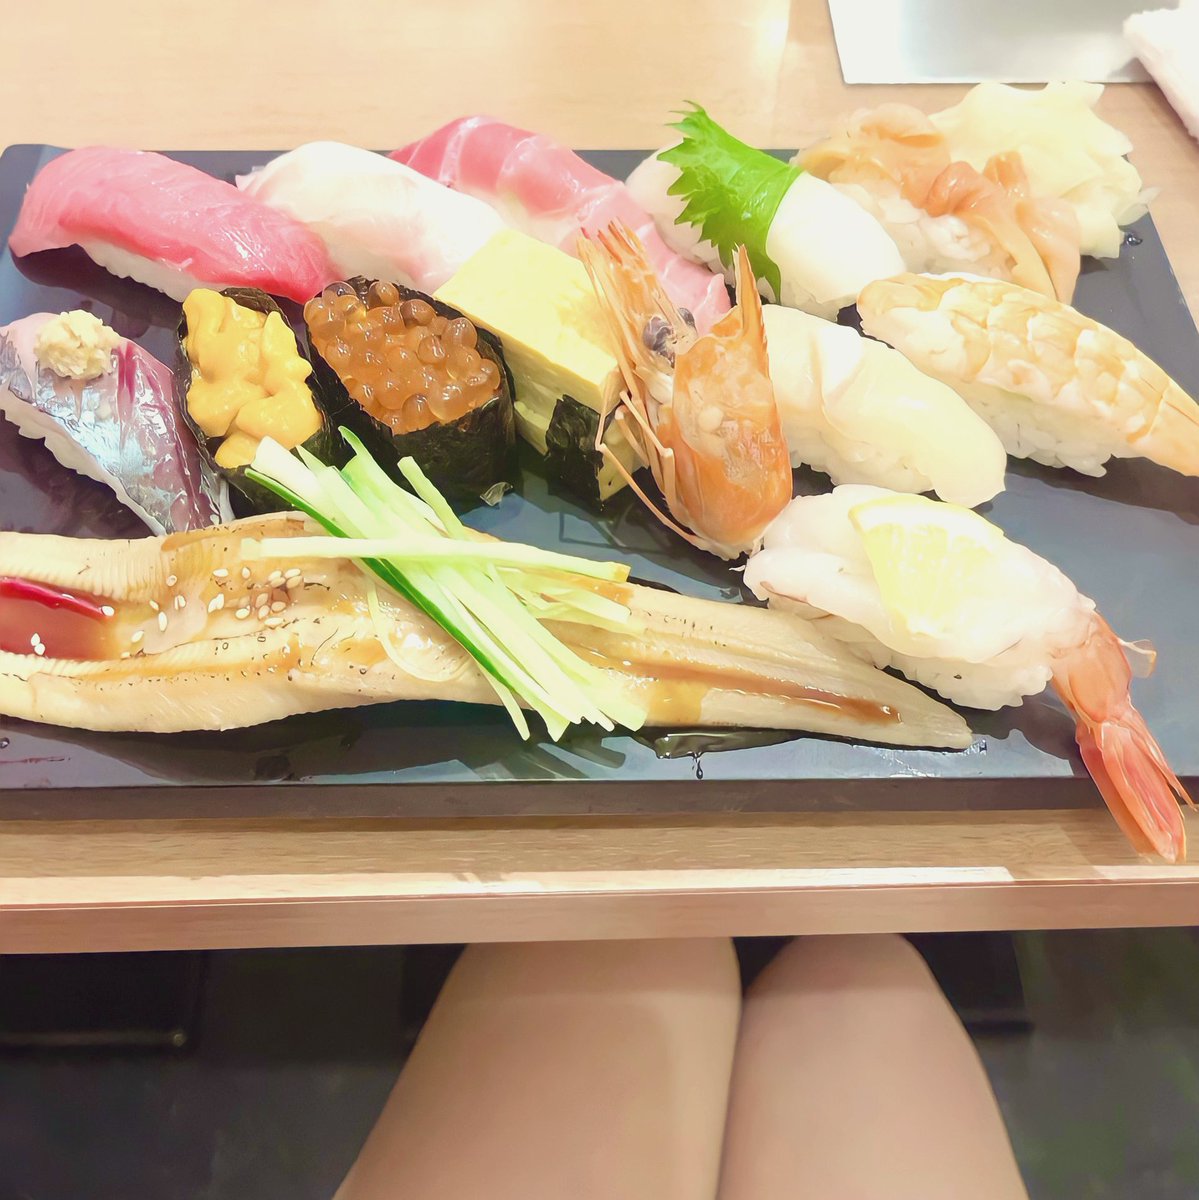 こんばんは❣️ お寿司食べに行ってきました❤️ 大好きな赤貝とウニと中トロ最高でした❤️ たくさん食べてお腹いっぱいになりました💓 明日予約のお兄さんさっきは連絡ありがとう❣️ 待ち遠しいです